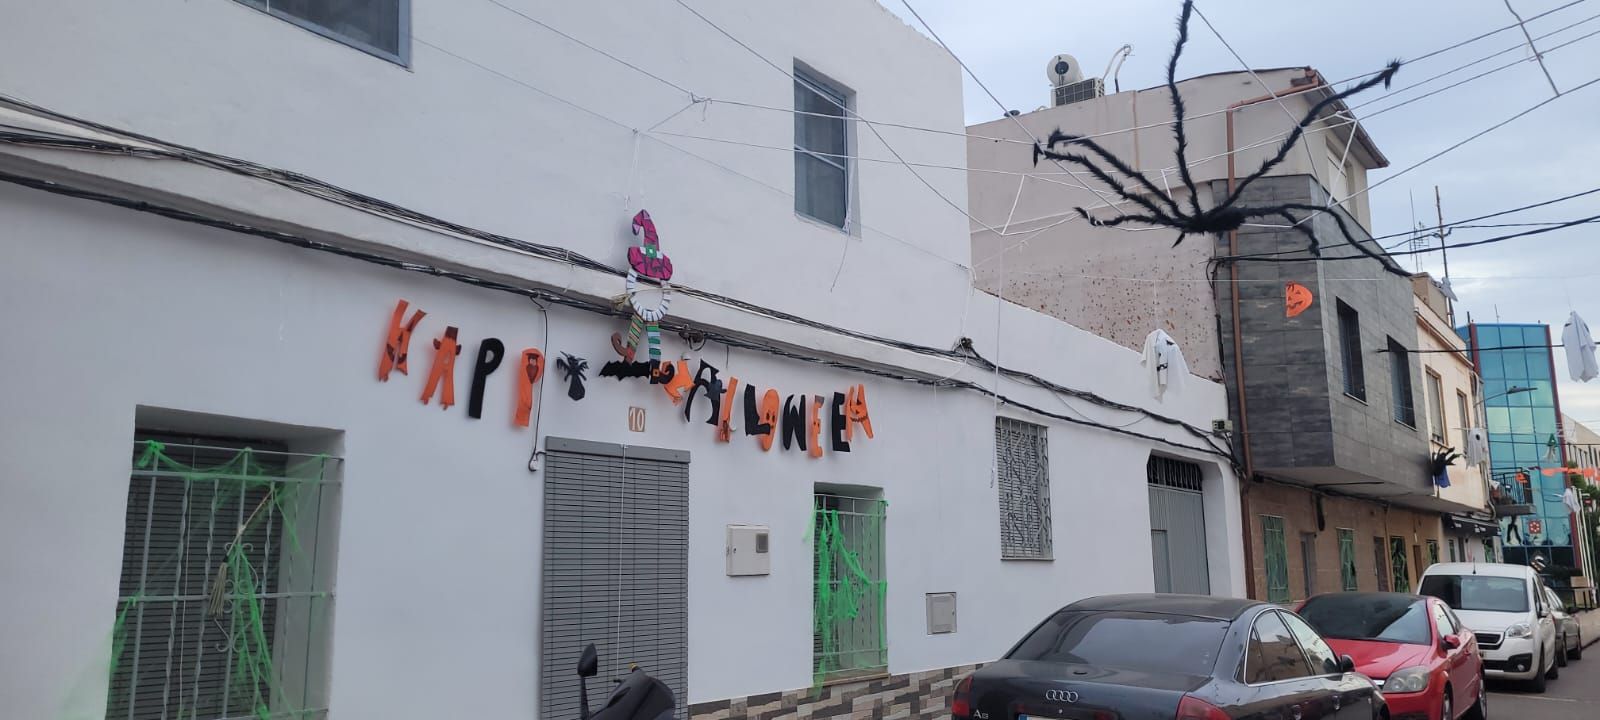 Así han decorado sus casas los vecinos del Grupo Lourdes de Castelló por Halloween